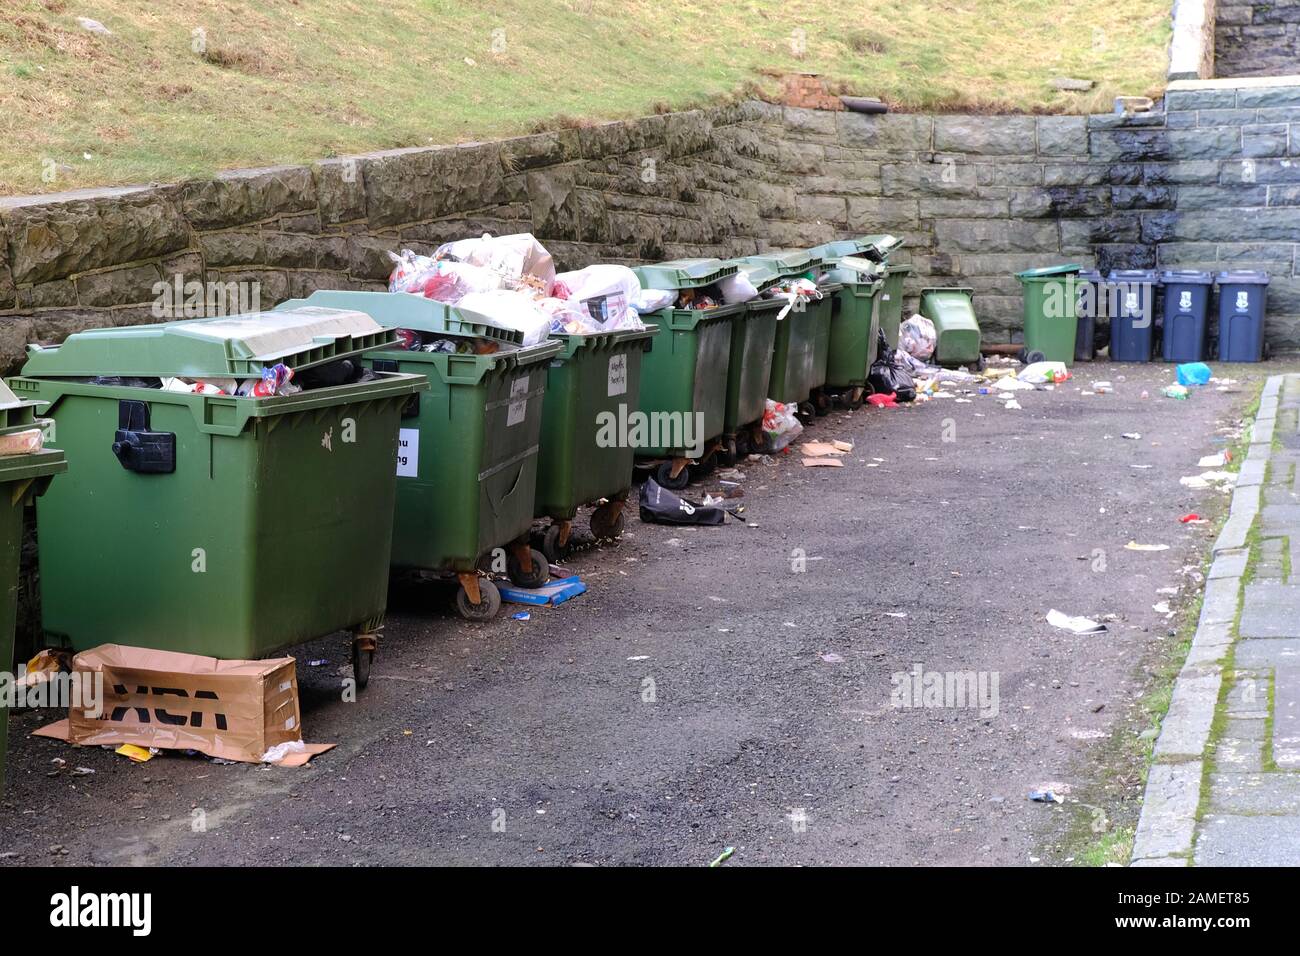 Plusieurs grandes poubelles à roues débordant de déchets en attente de collecte Banque D'Images